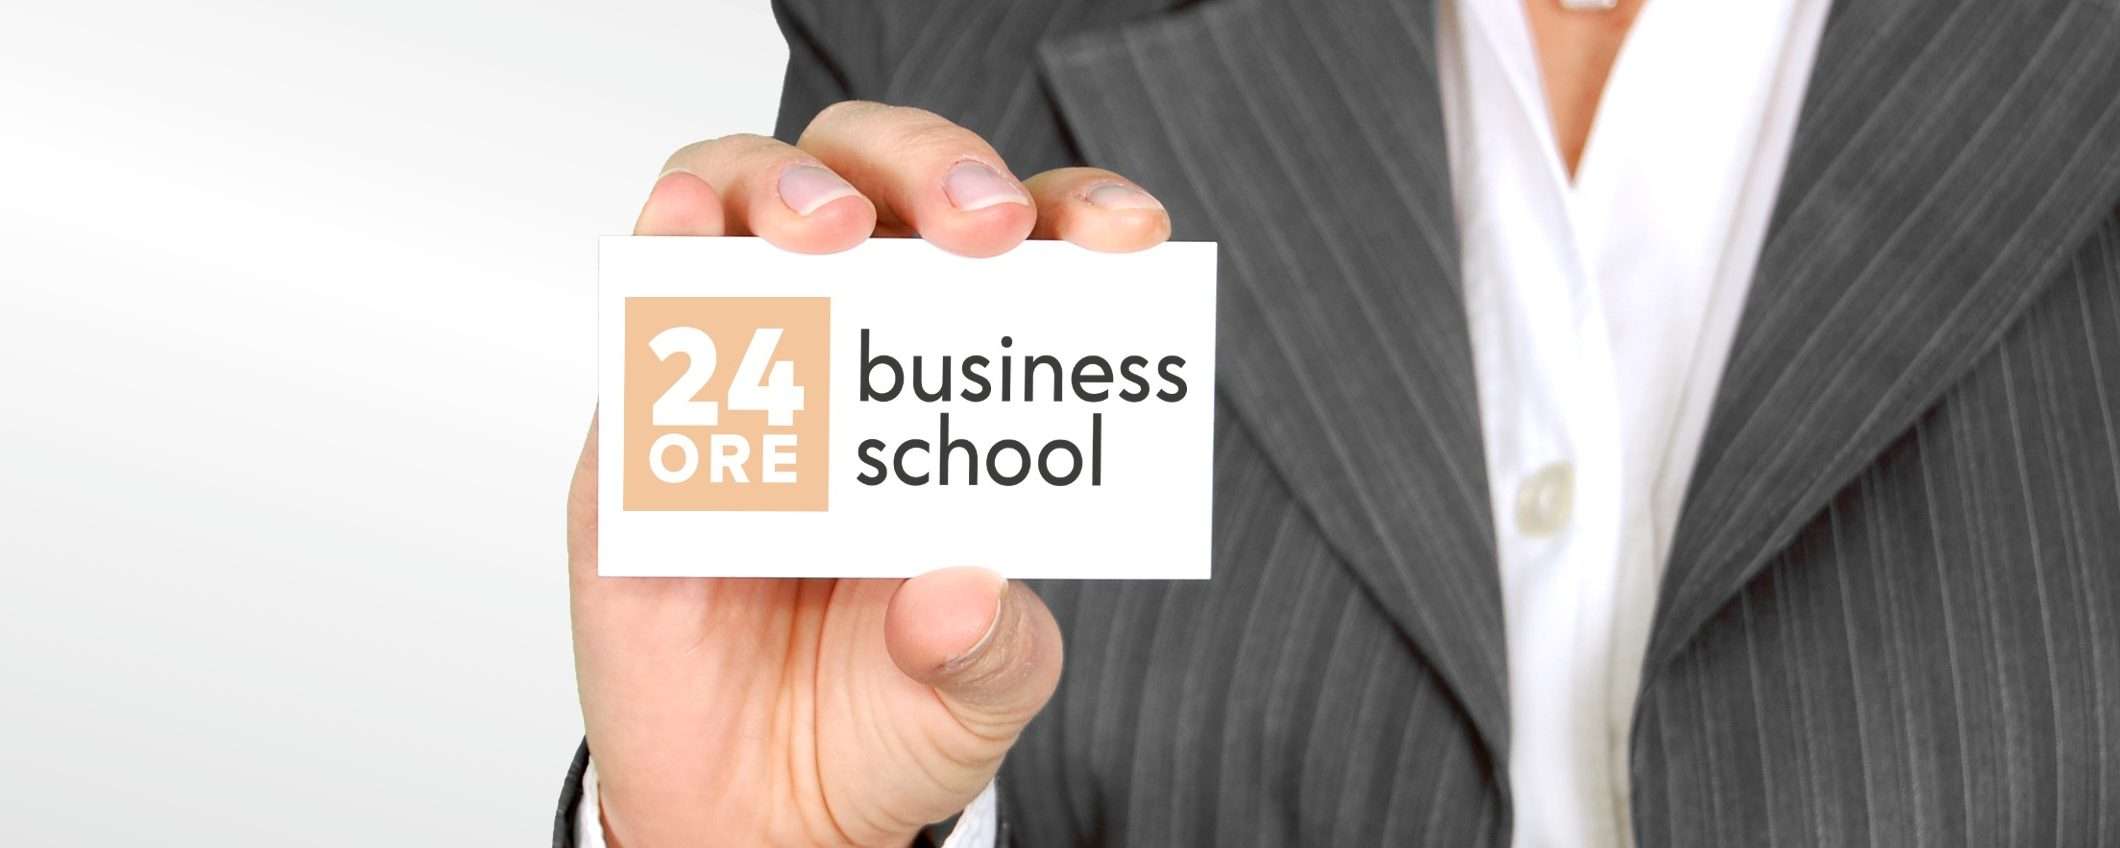 24ORE Business School: il link tra la vocazione e il successo